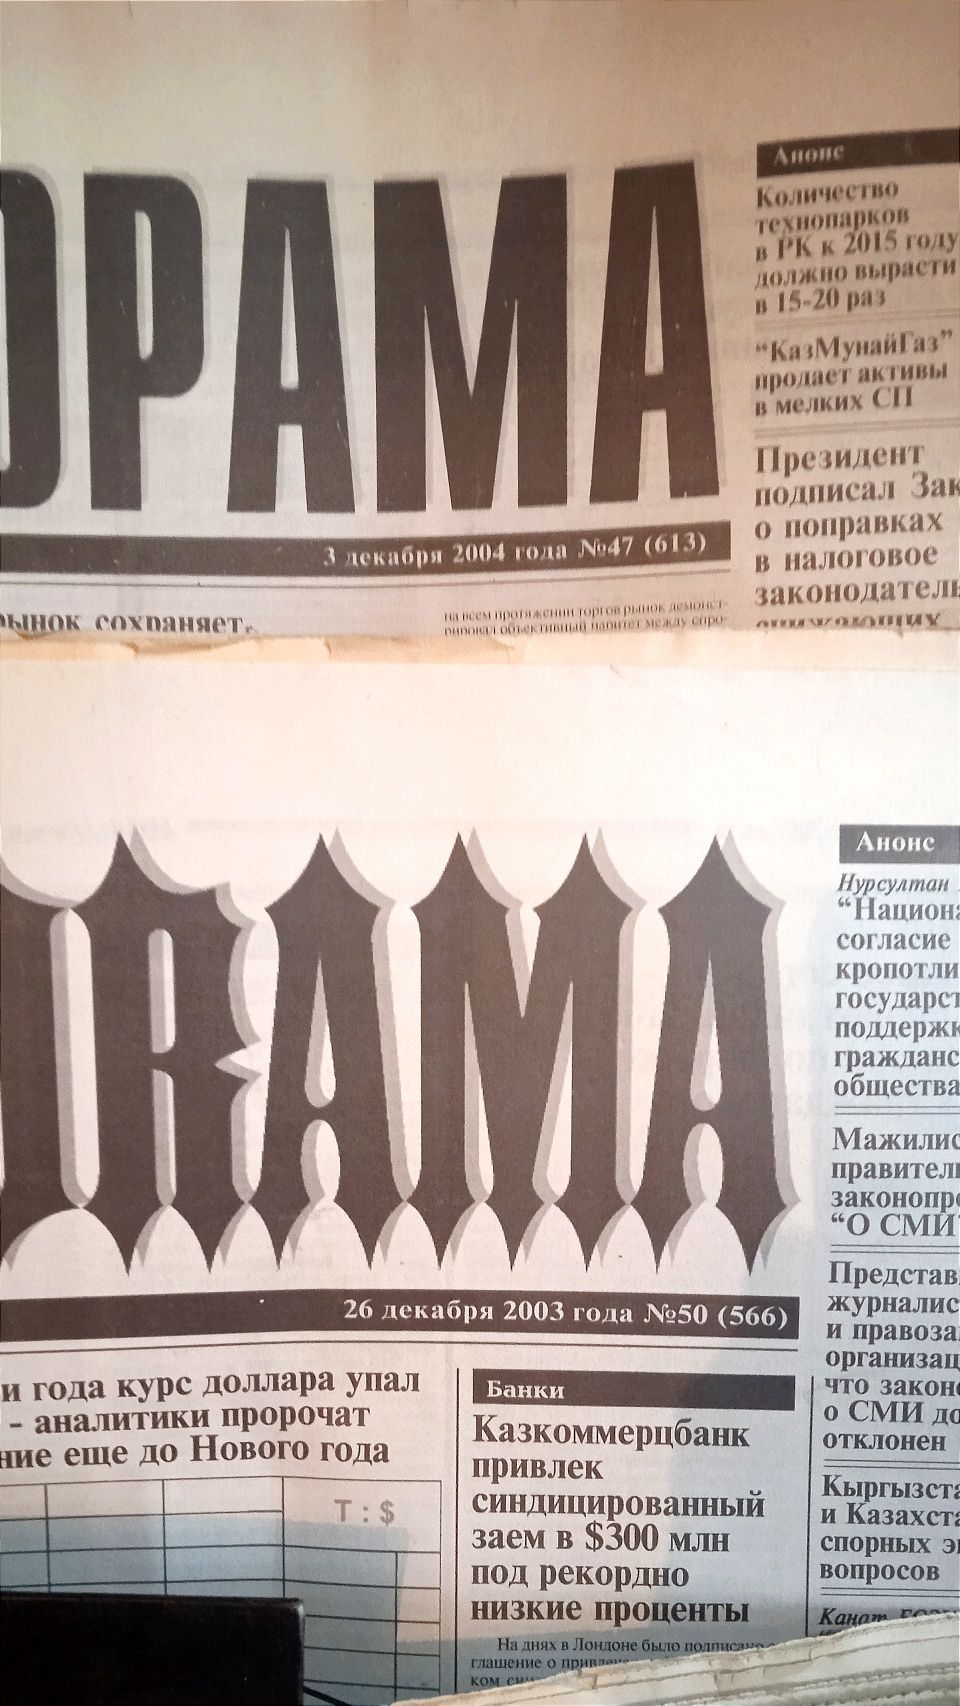 Газеты. 4 подшивки "Панорама" Формат А2